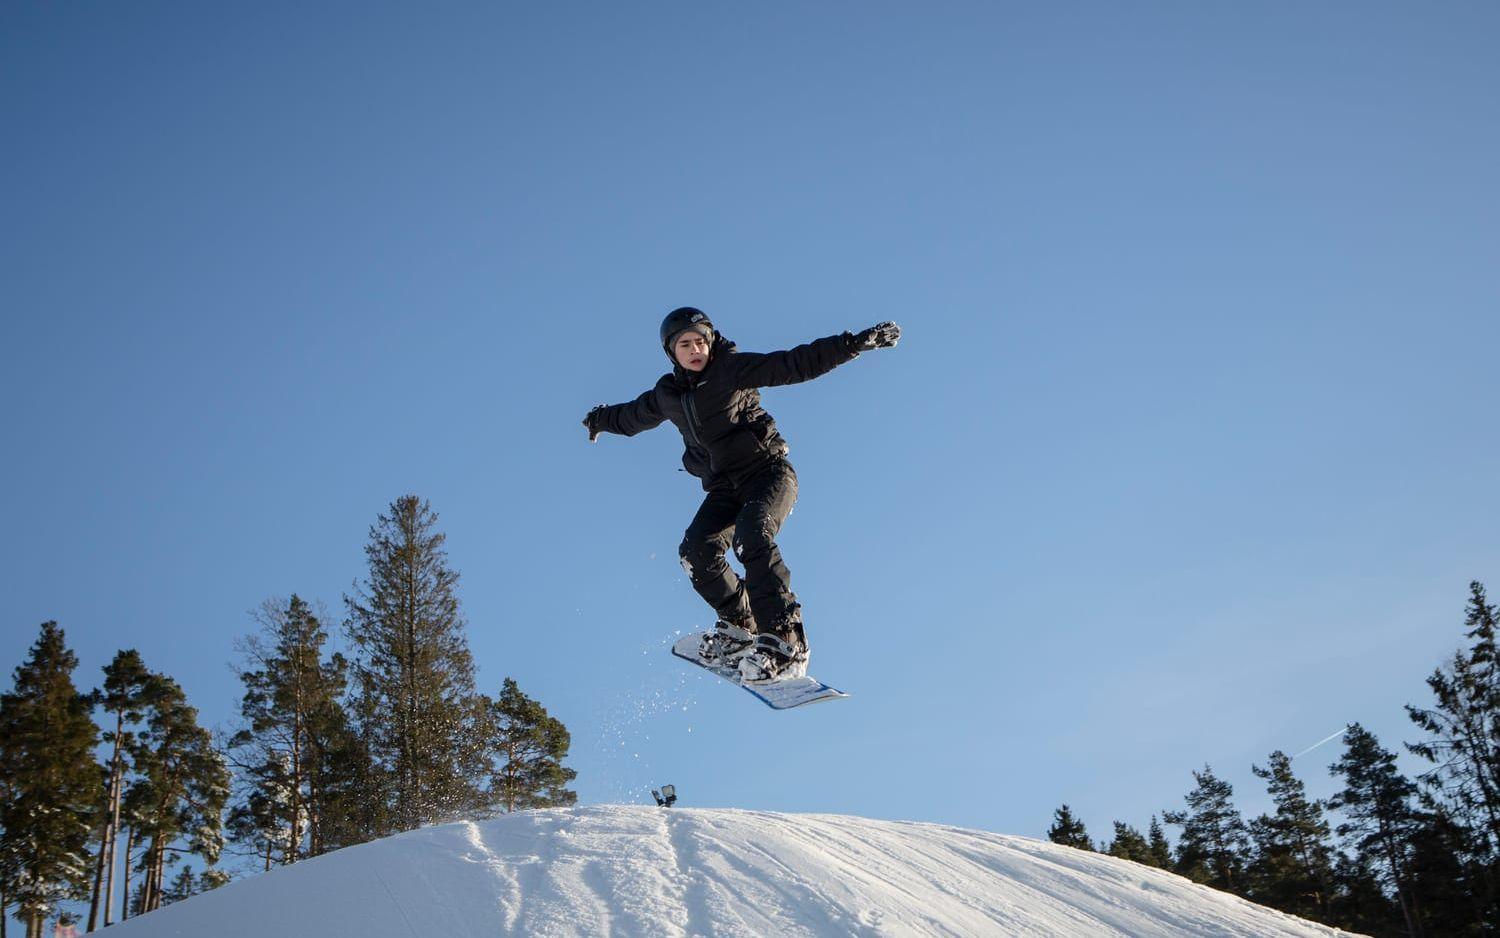 Brädåkare på snö. Denis Gustafsson från Nol åker snowboard och hänger med vänner i Alebacken under hela sportlovet.